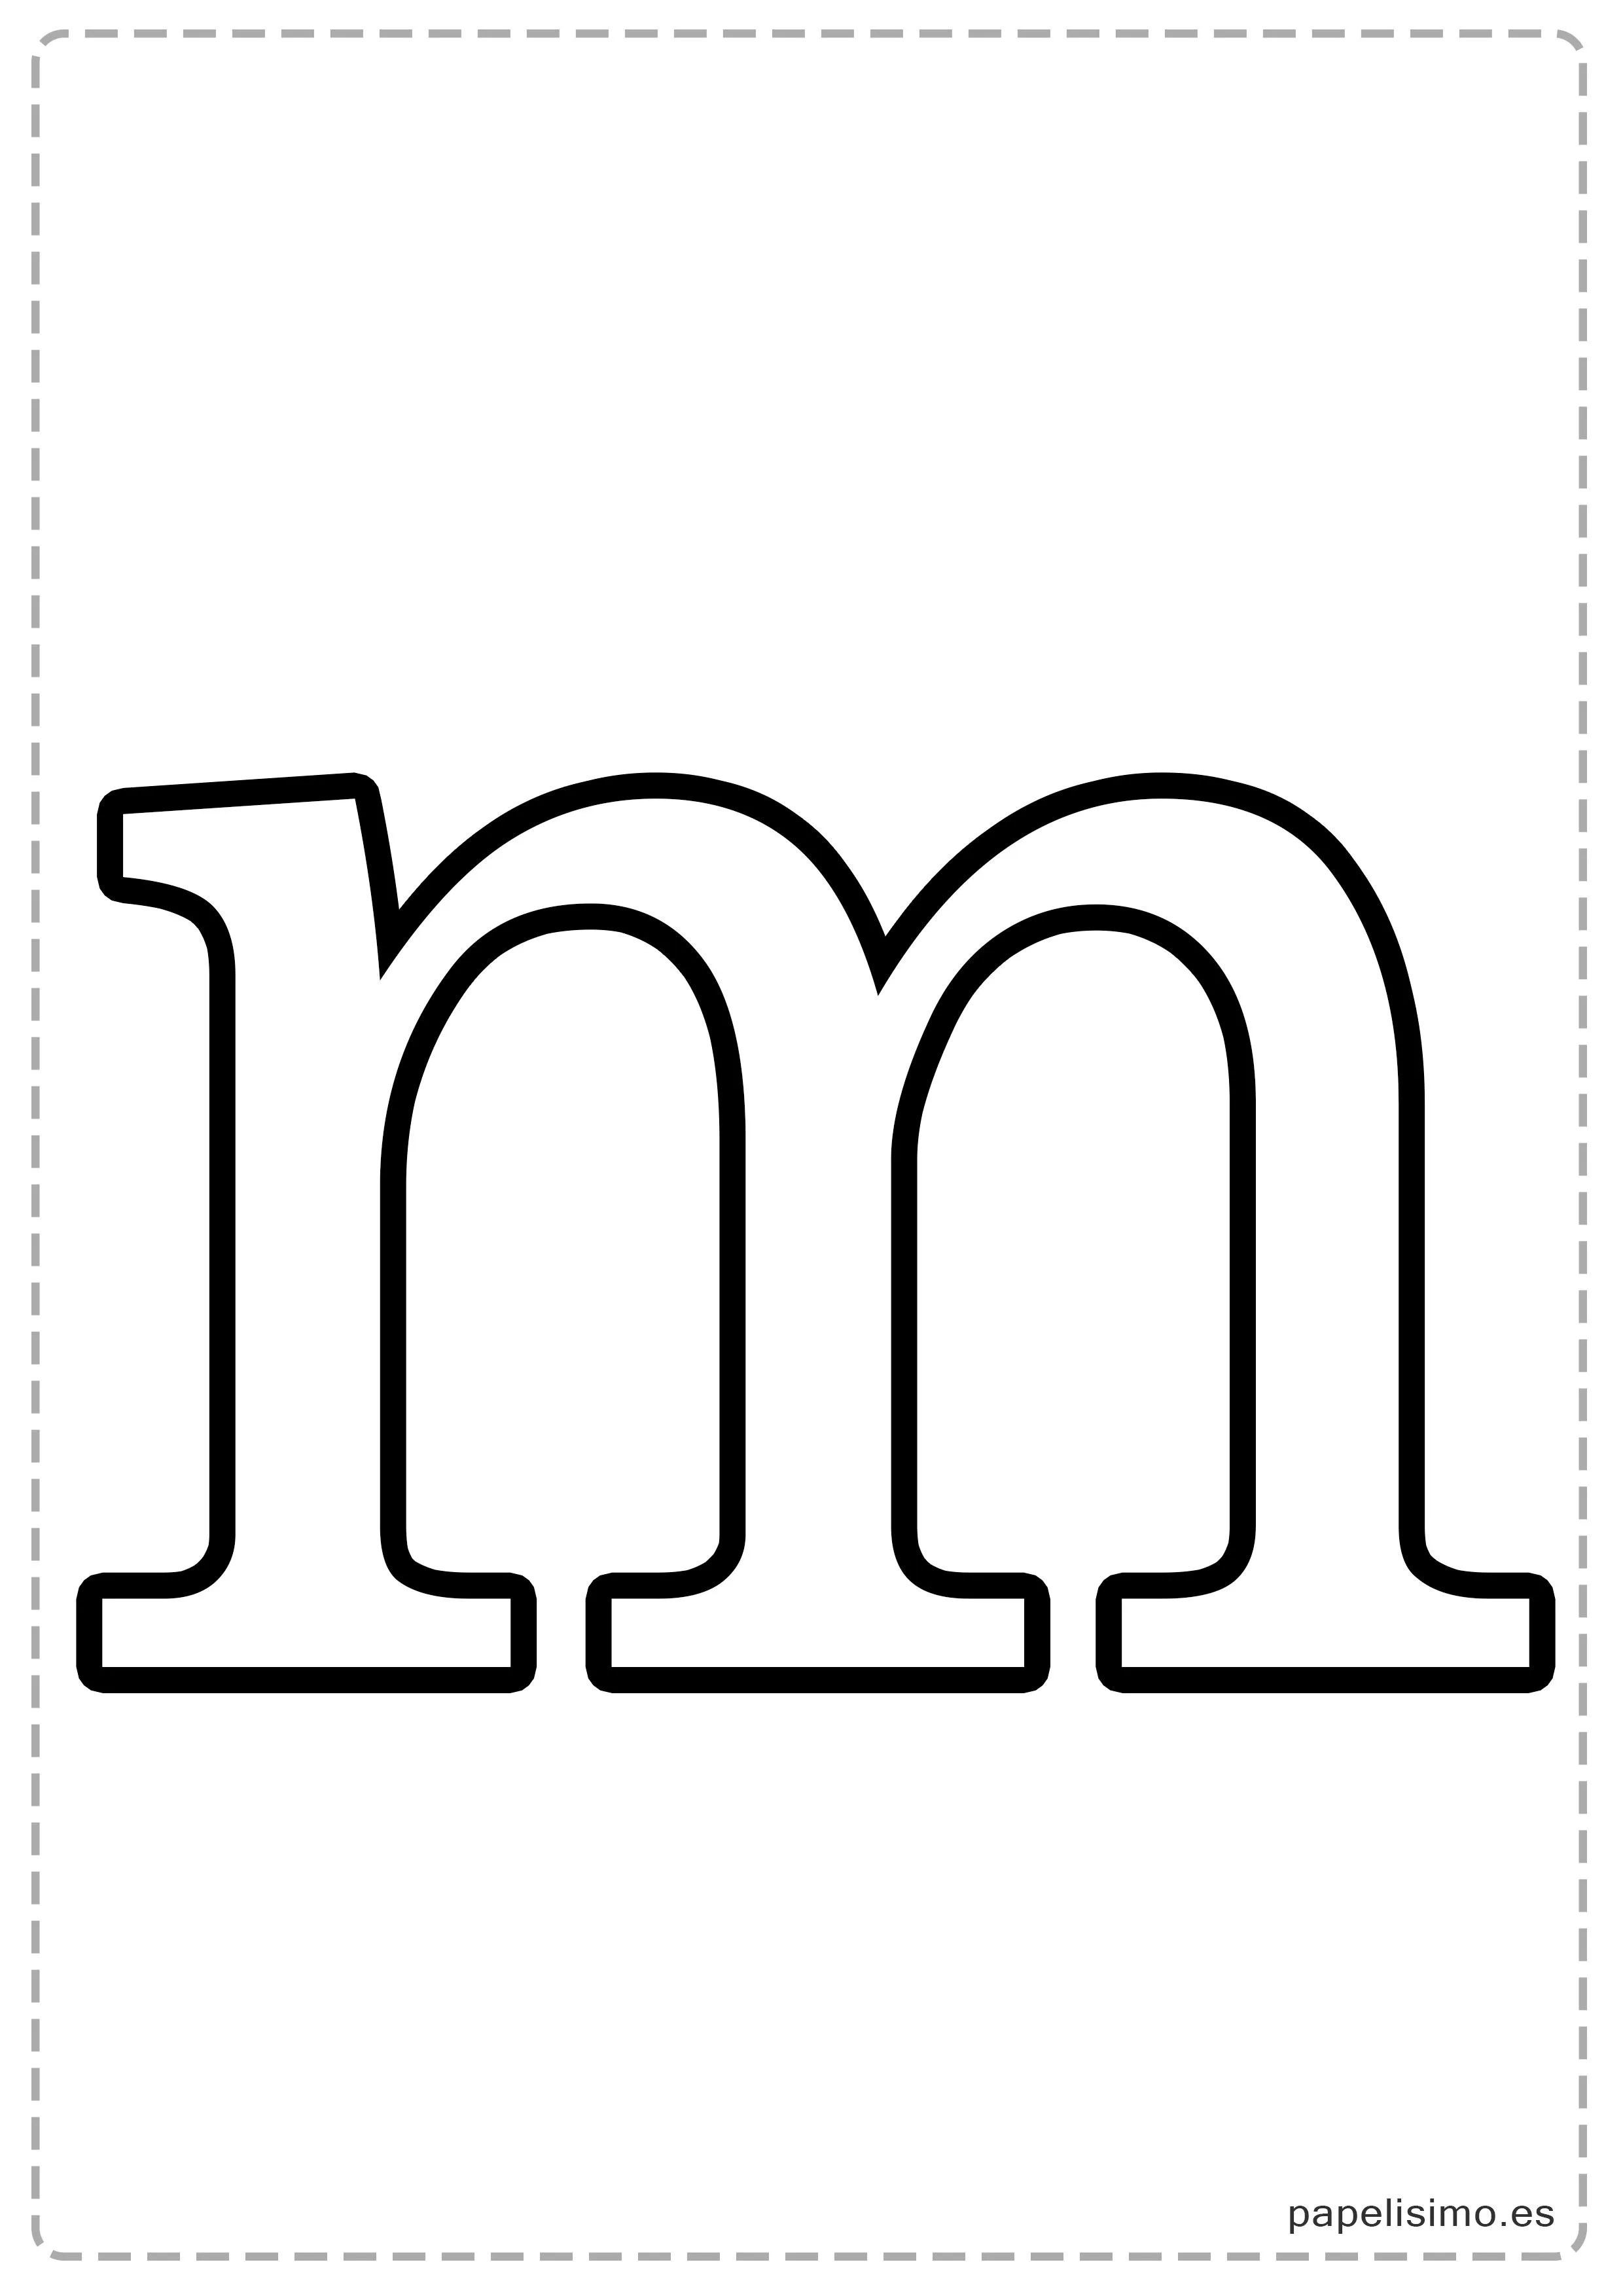 Letras grandes para imprimir (minúsculas) | Papelisimo